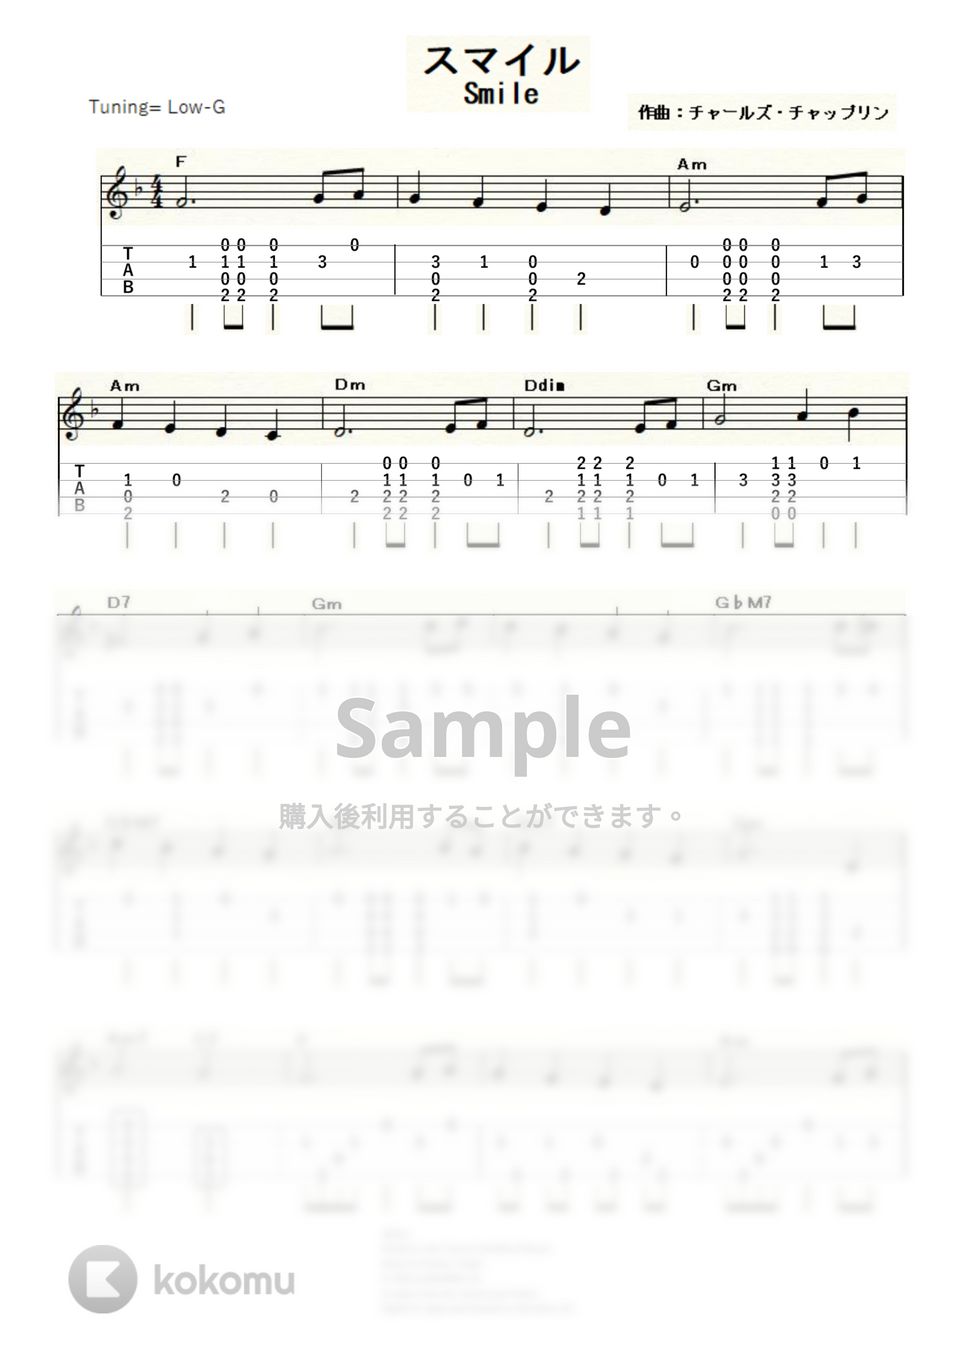 チャップリン - スマイル (ｳｸﾚﾚｿﾛ / Low-G / 初級) by ukulelepapa